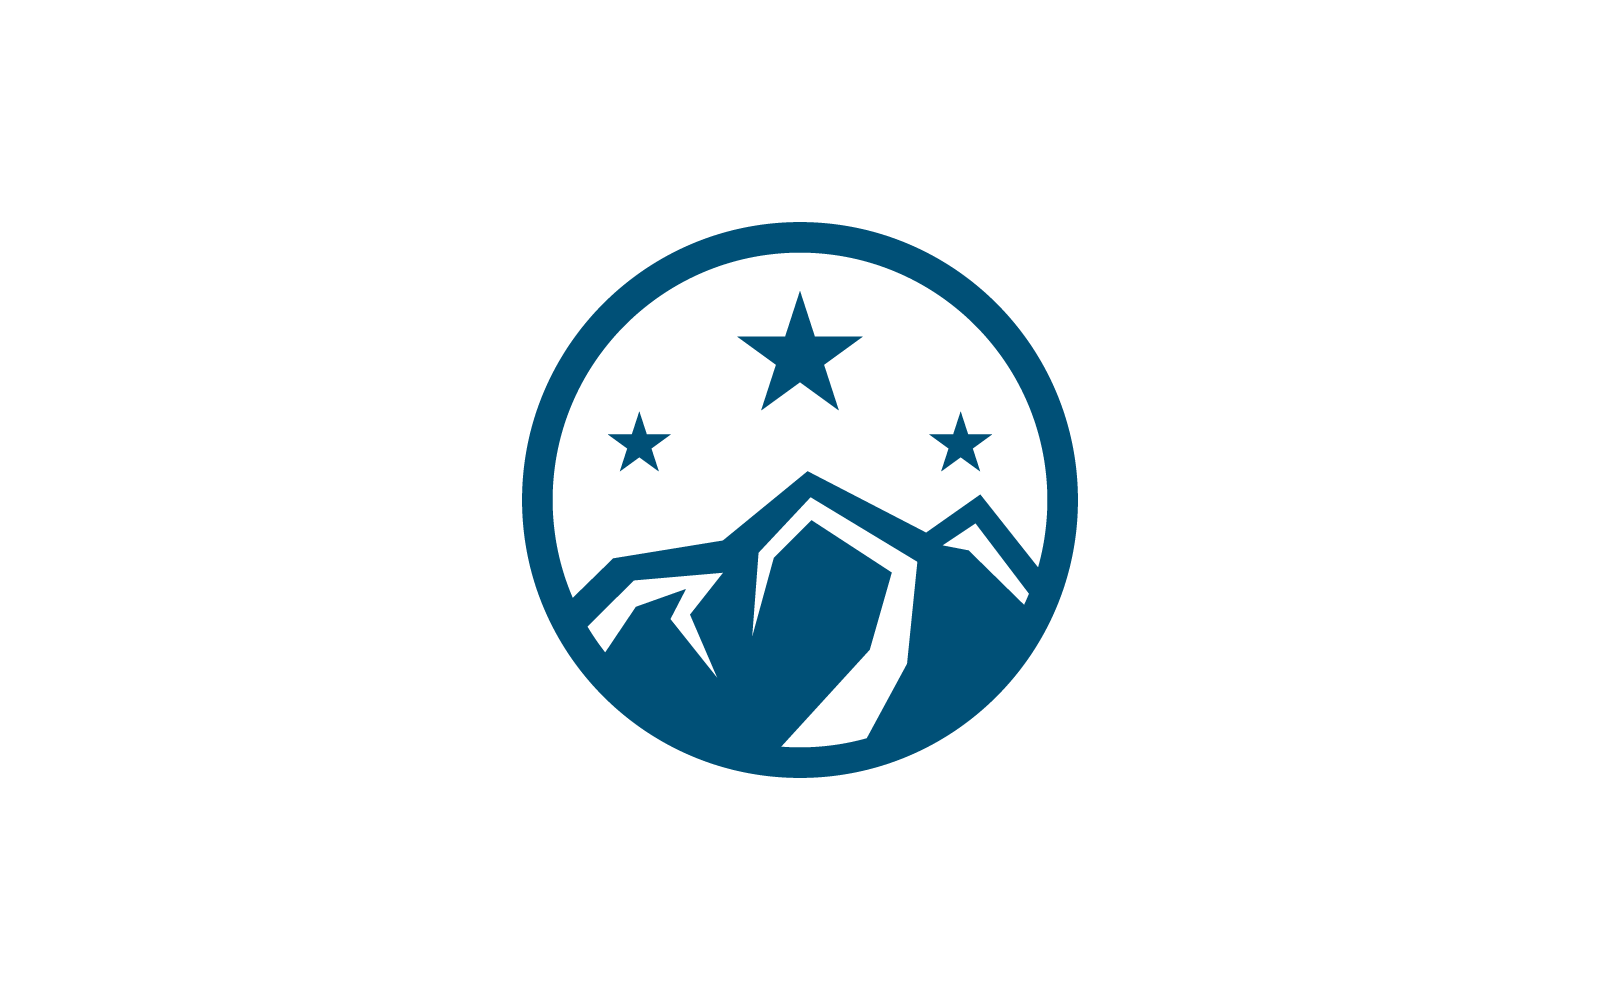 Berg-Logo-Vektor-Illustrationsvorlage für flaches Design